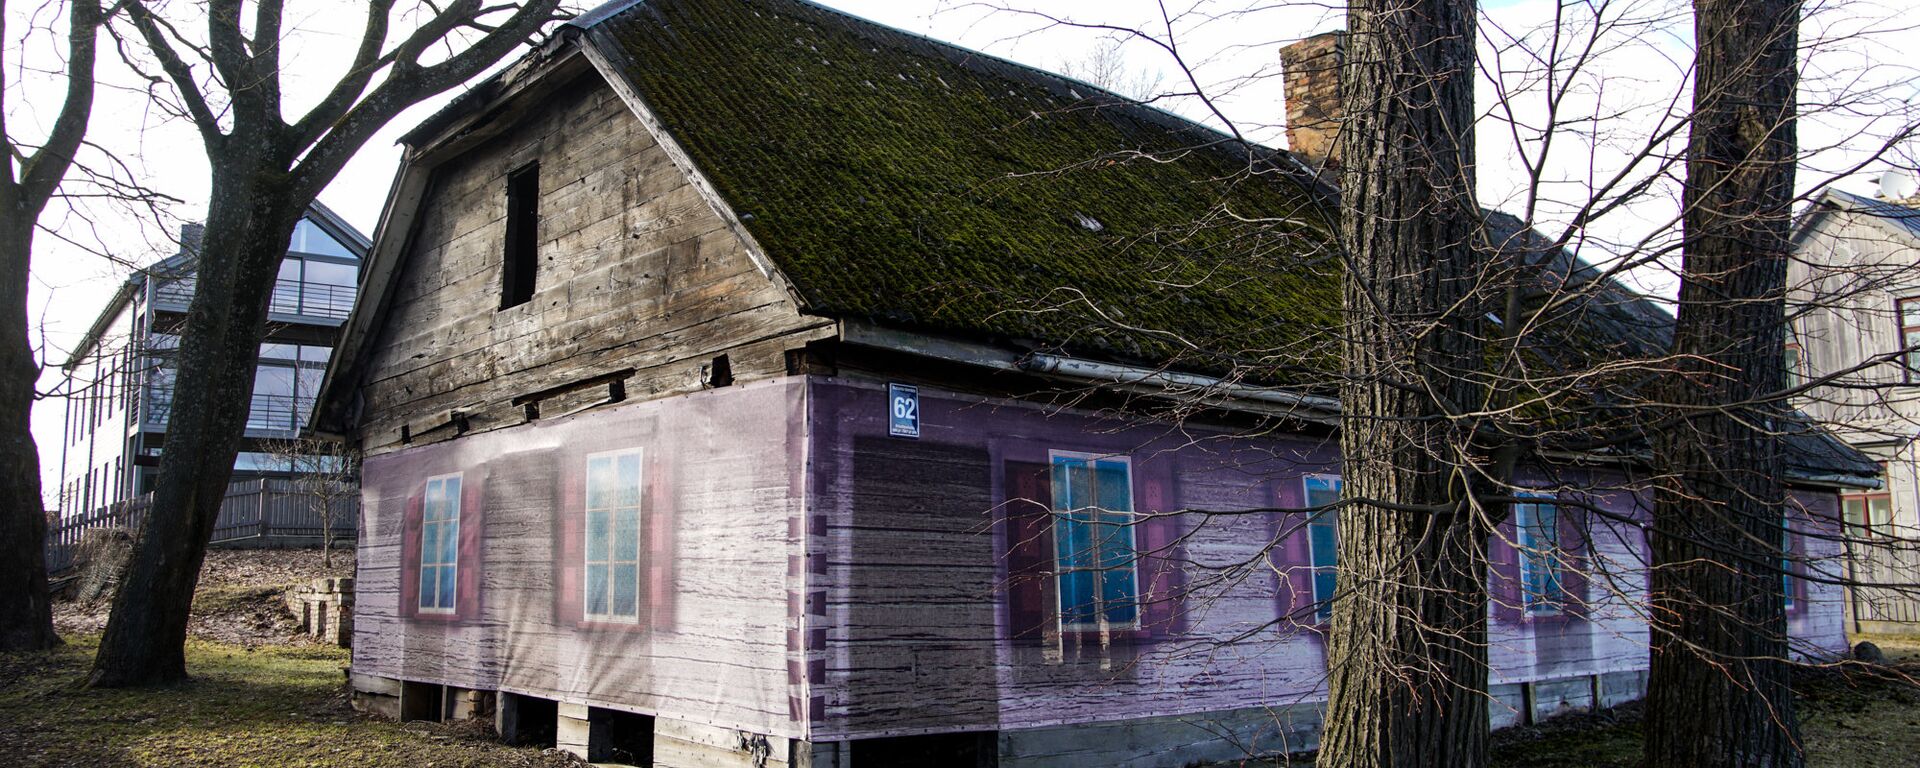 Заброшенный деревянный дом на Кипсале - Sputnik Латвия, 1920, 24.03.2021